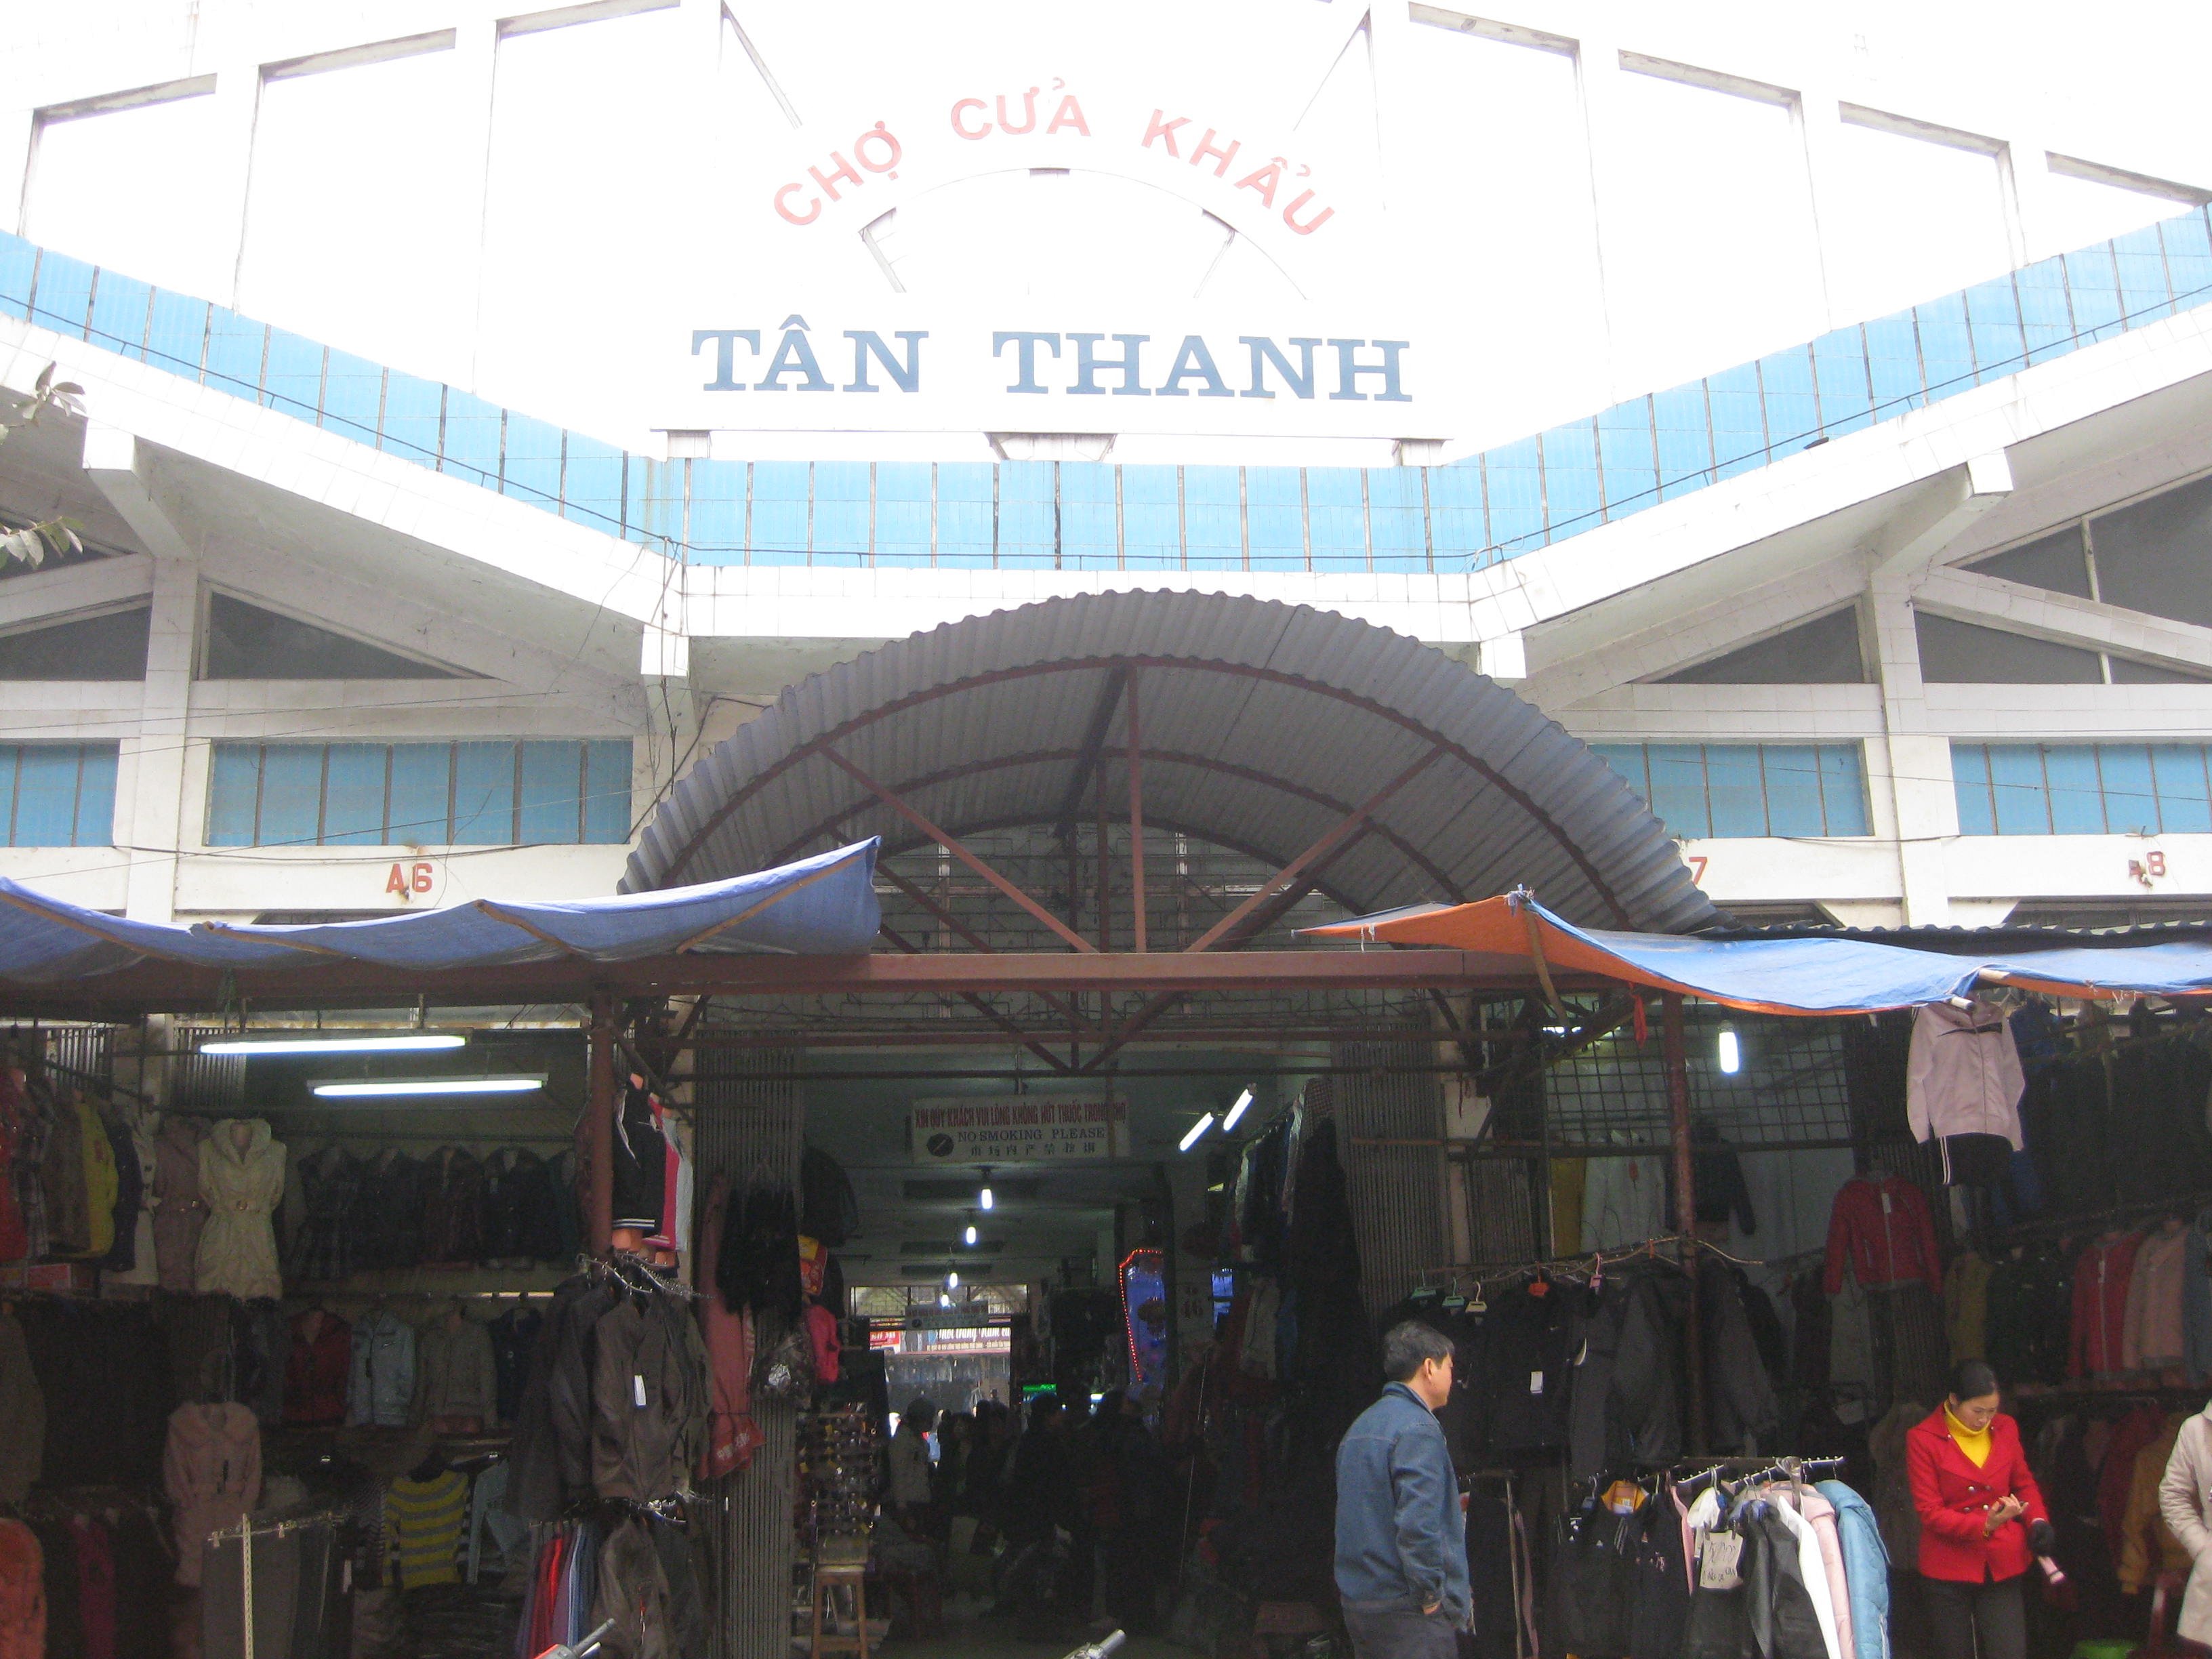 Đi tham quan và mua sắm tại chợ Tân Thanh trong tour du lịch Lạng Sơn 1 ngày